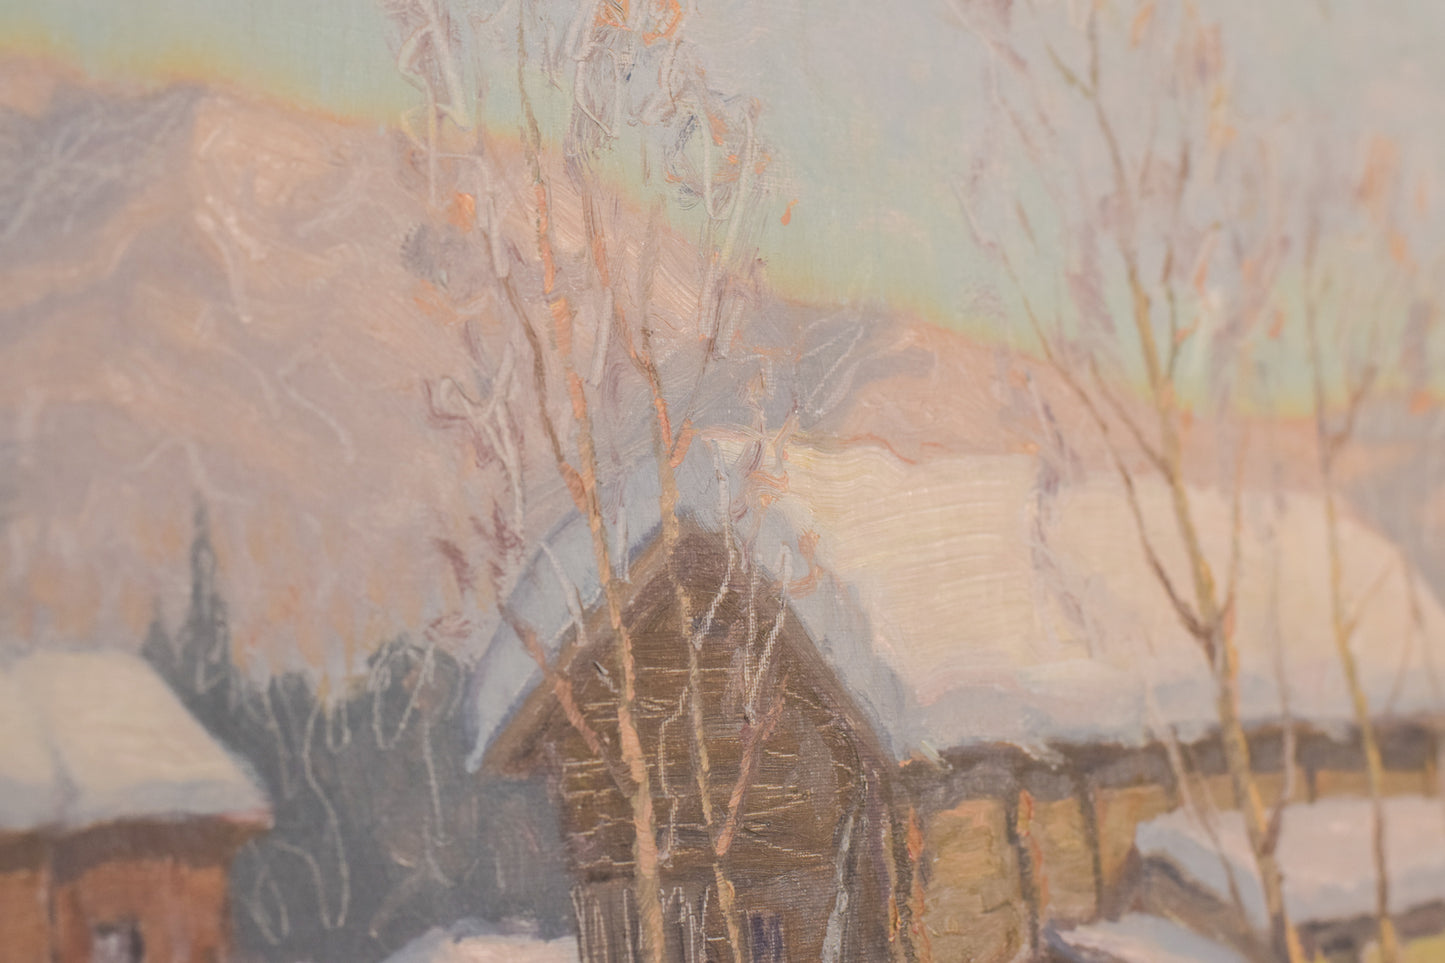 Einar Krüger - Post Impressionist Snowscape